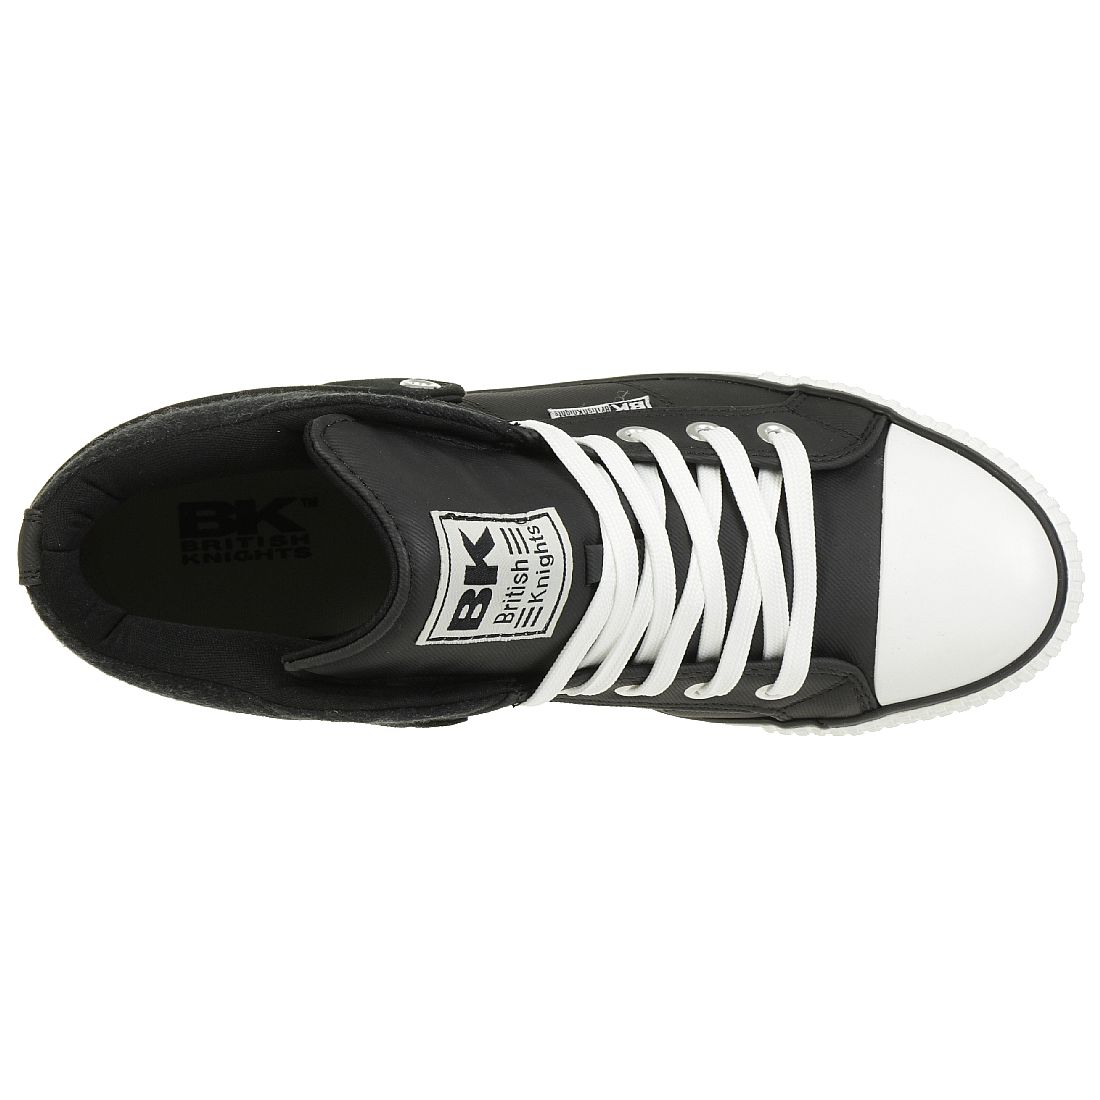 British Knights ROCO BK Sneaker B40-3703-33 schwarz